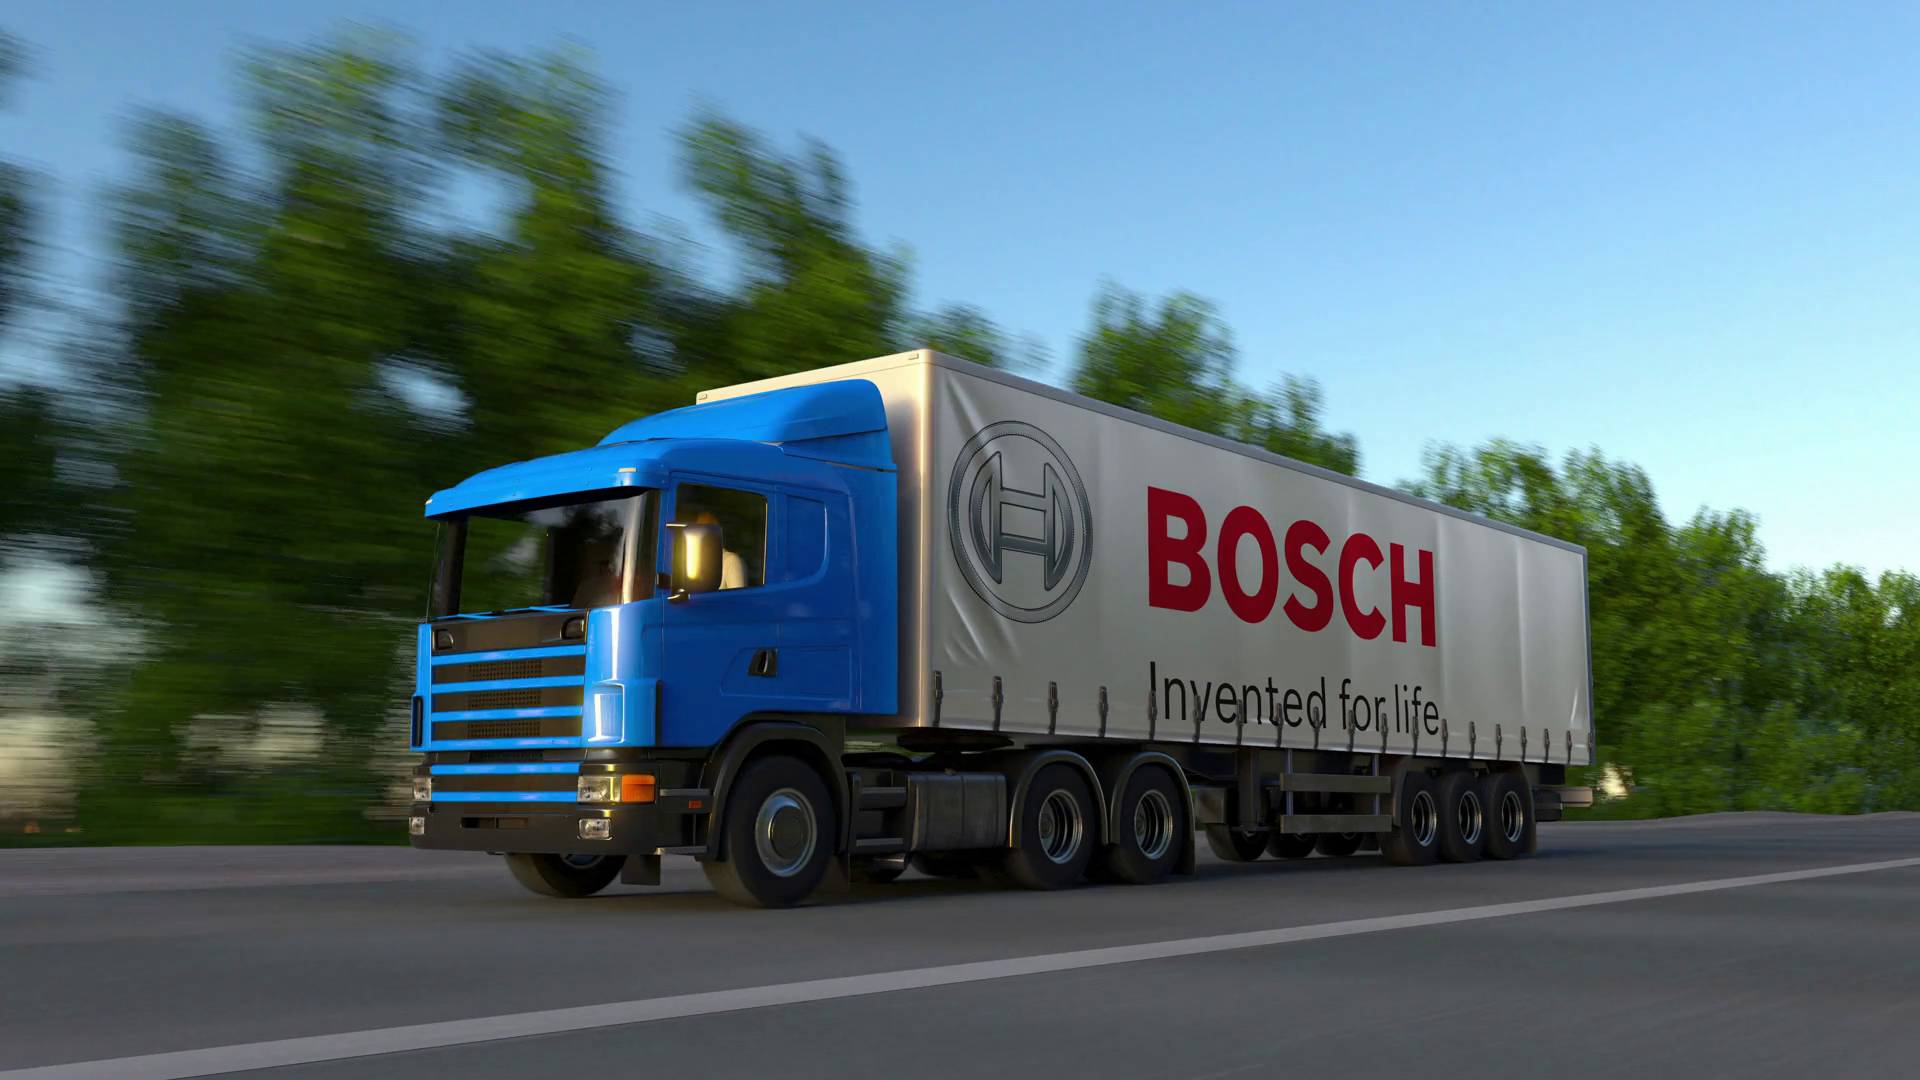 Bosch Wallpaper - Amazon Truck , HD Wallpaper & Backgrounds